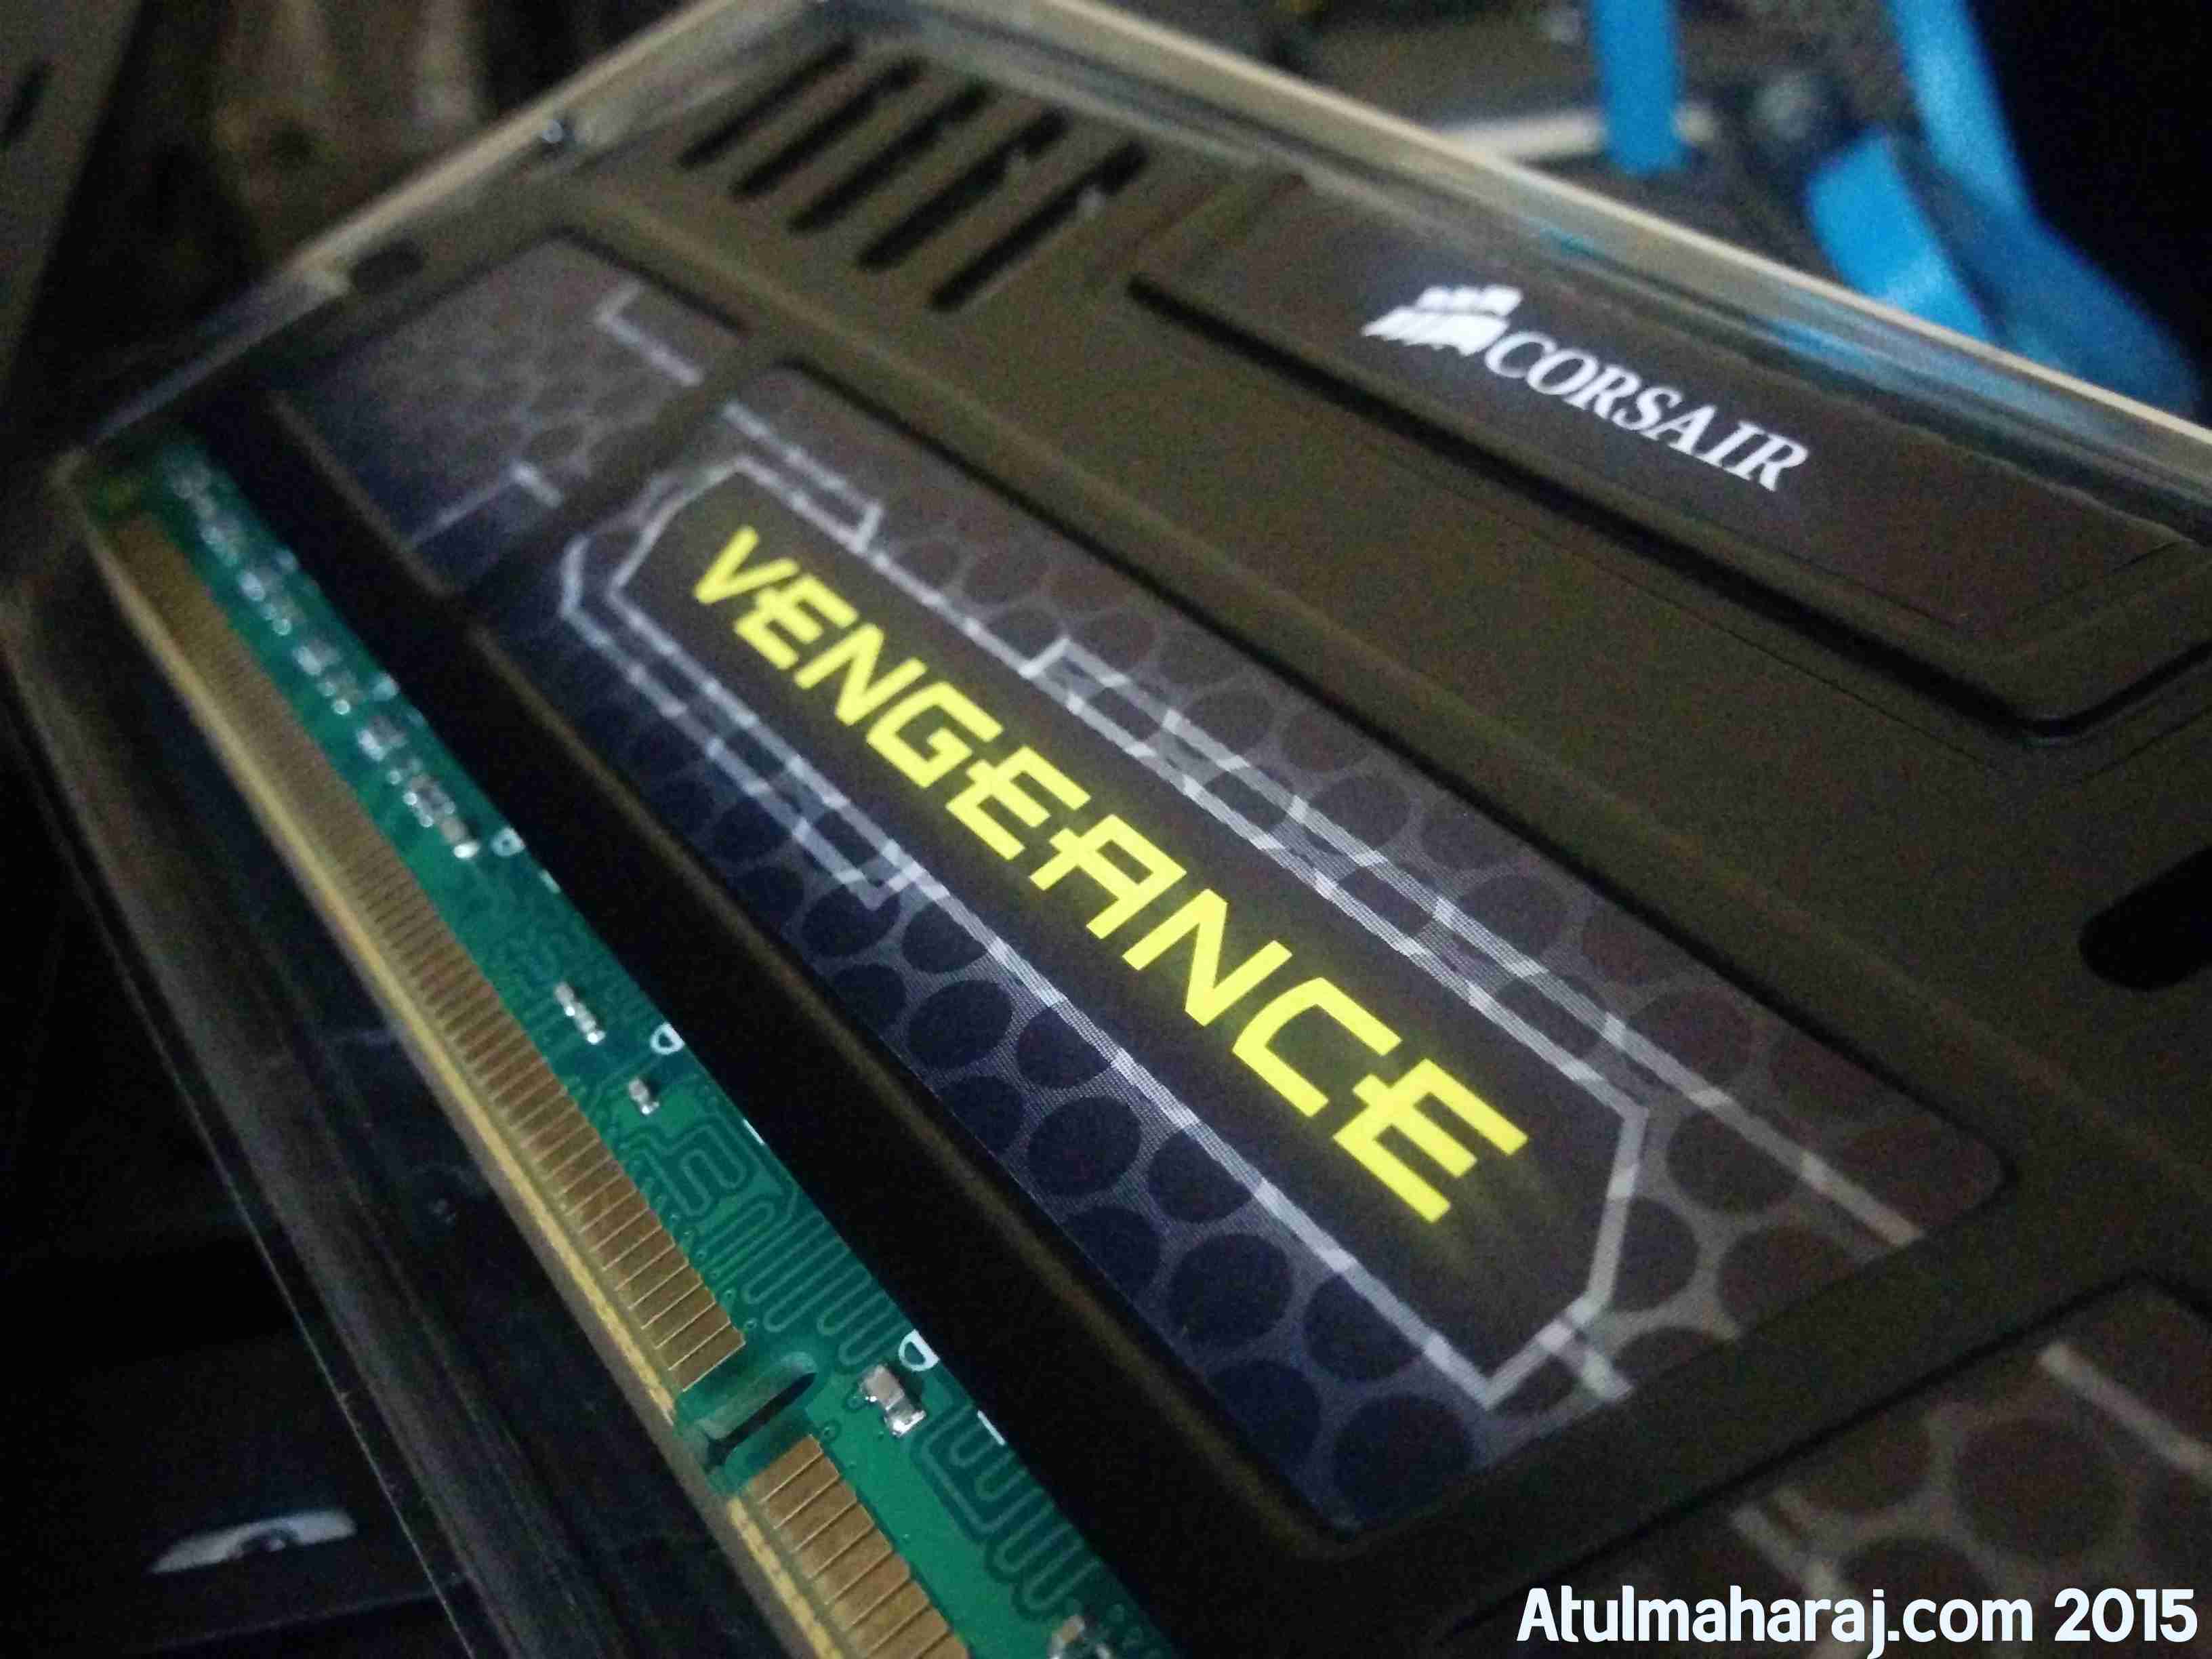 Corsair Vengeance DDR3 Desktop RAM.